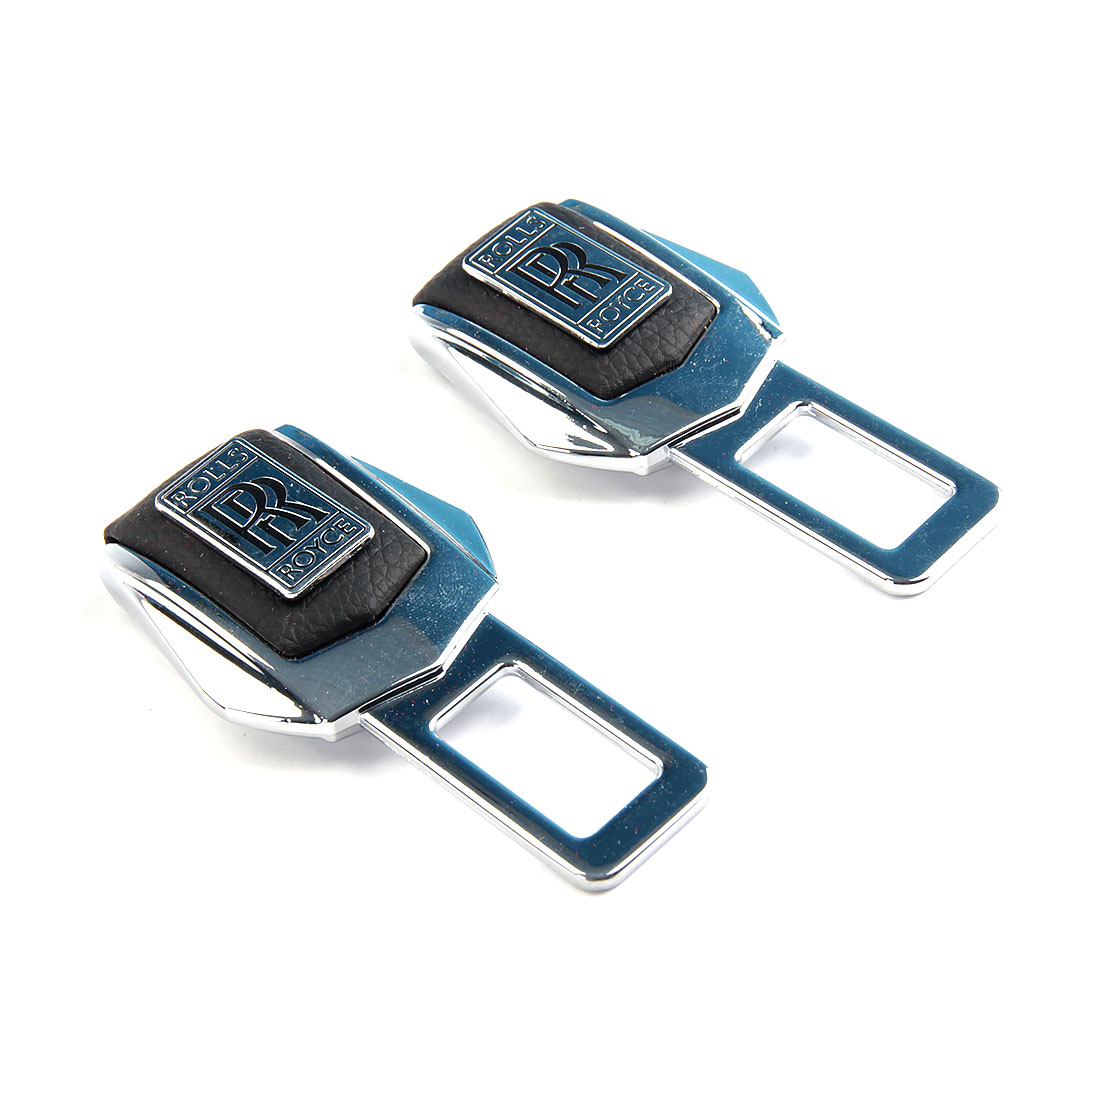 Заглушки ремня безопасности DreamCar, кожа, металл, в подарочной упаковке, 2шт Rols Royce